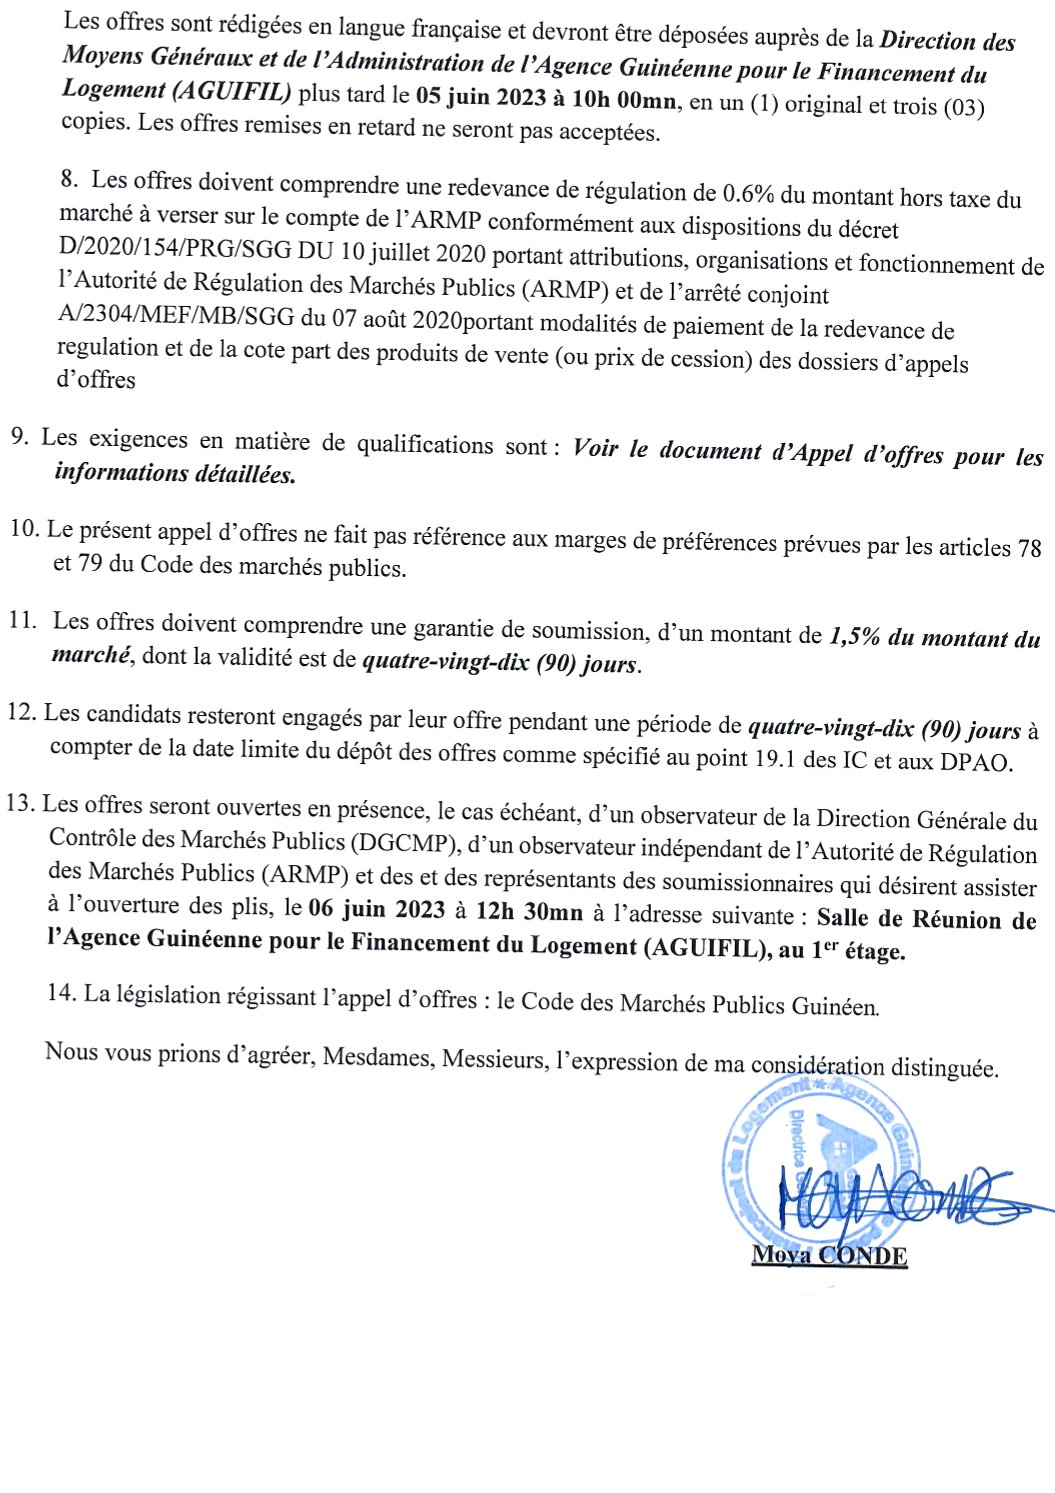 Invitation à soumissionner dans le cadre de l'Appel (l'Offres Ouvert relatif à l'acquisition de matériels informatiques pour l'Agence Guinéenne pour le Financement du Logement (A GUIFIL) | Page 2